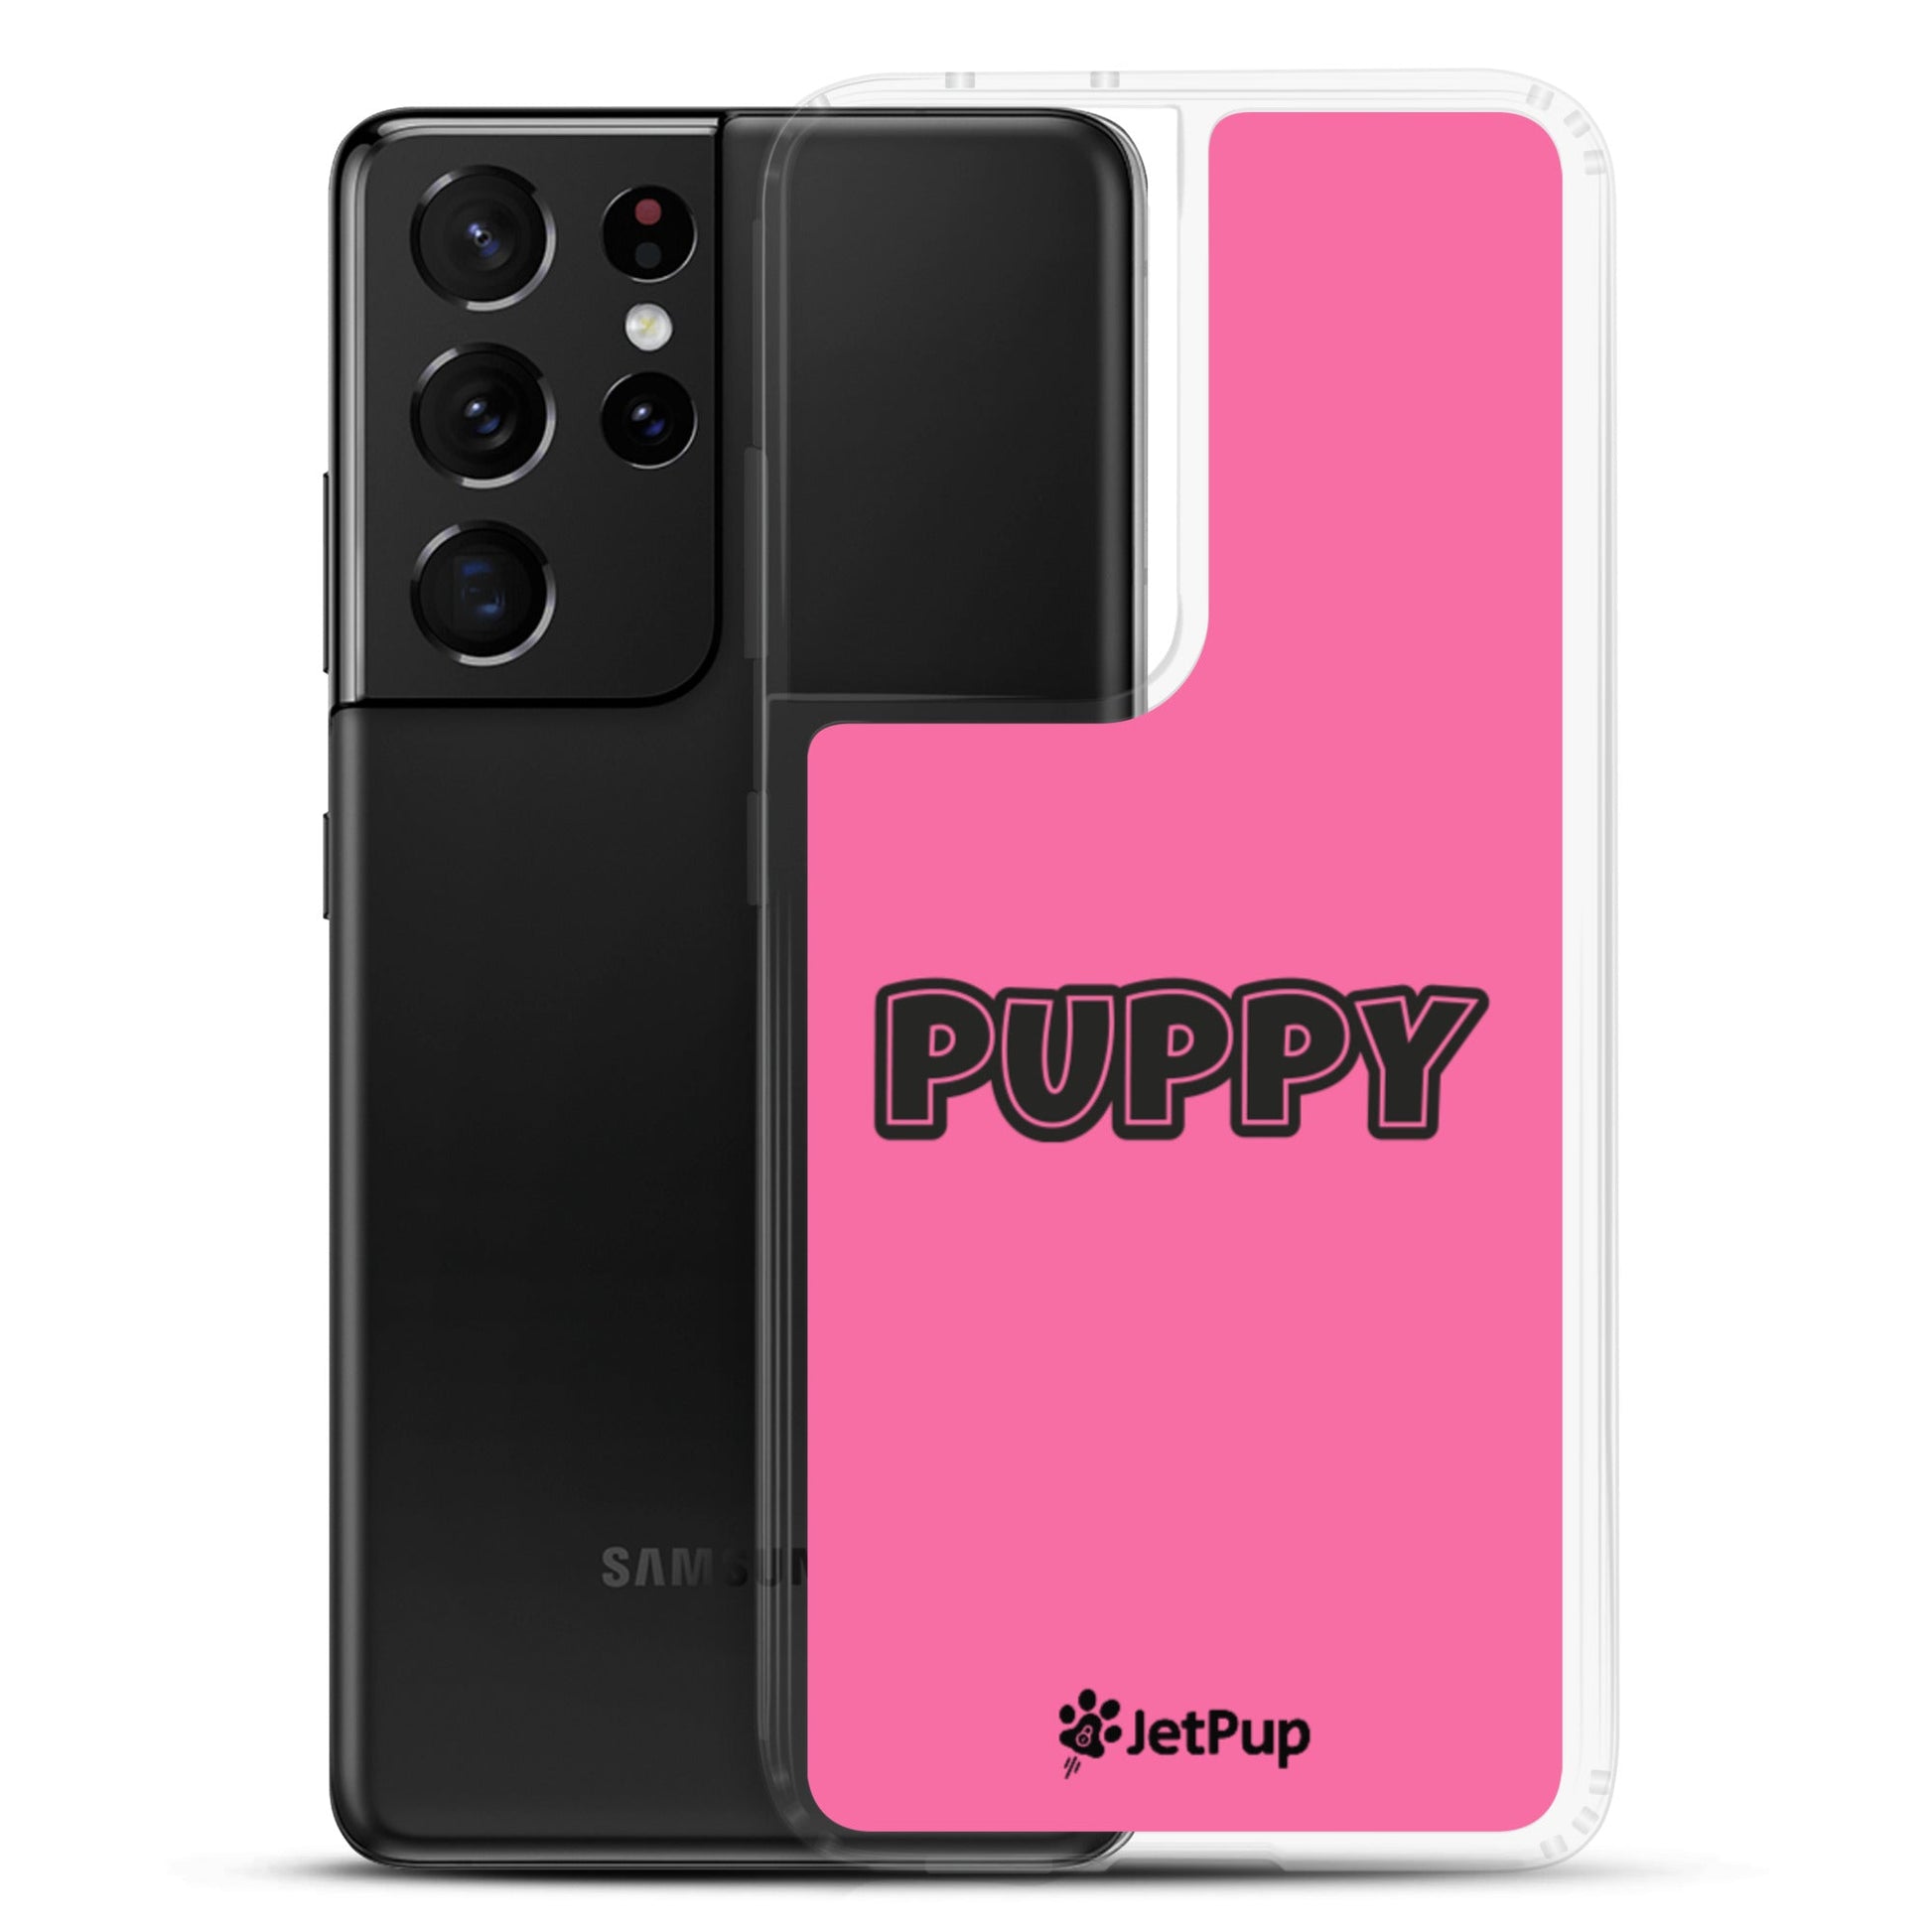 Puppy Samsung Case - Pink - JetPup